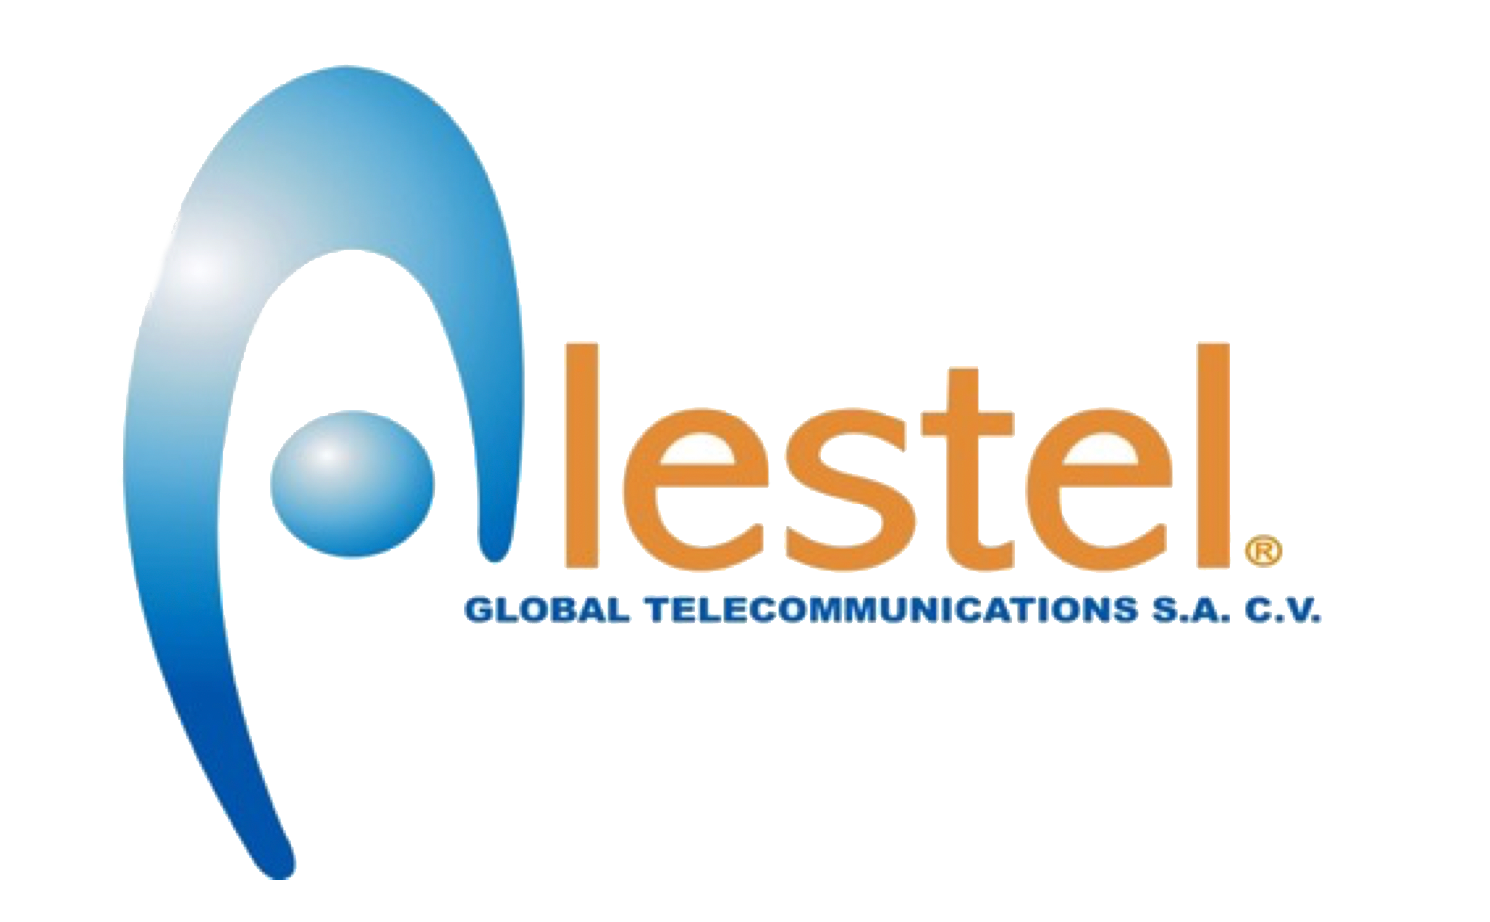 Alestel Global Telecomunications S.A. de C.V.